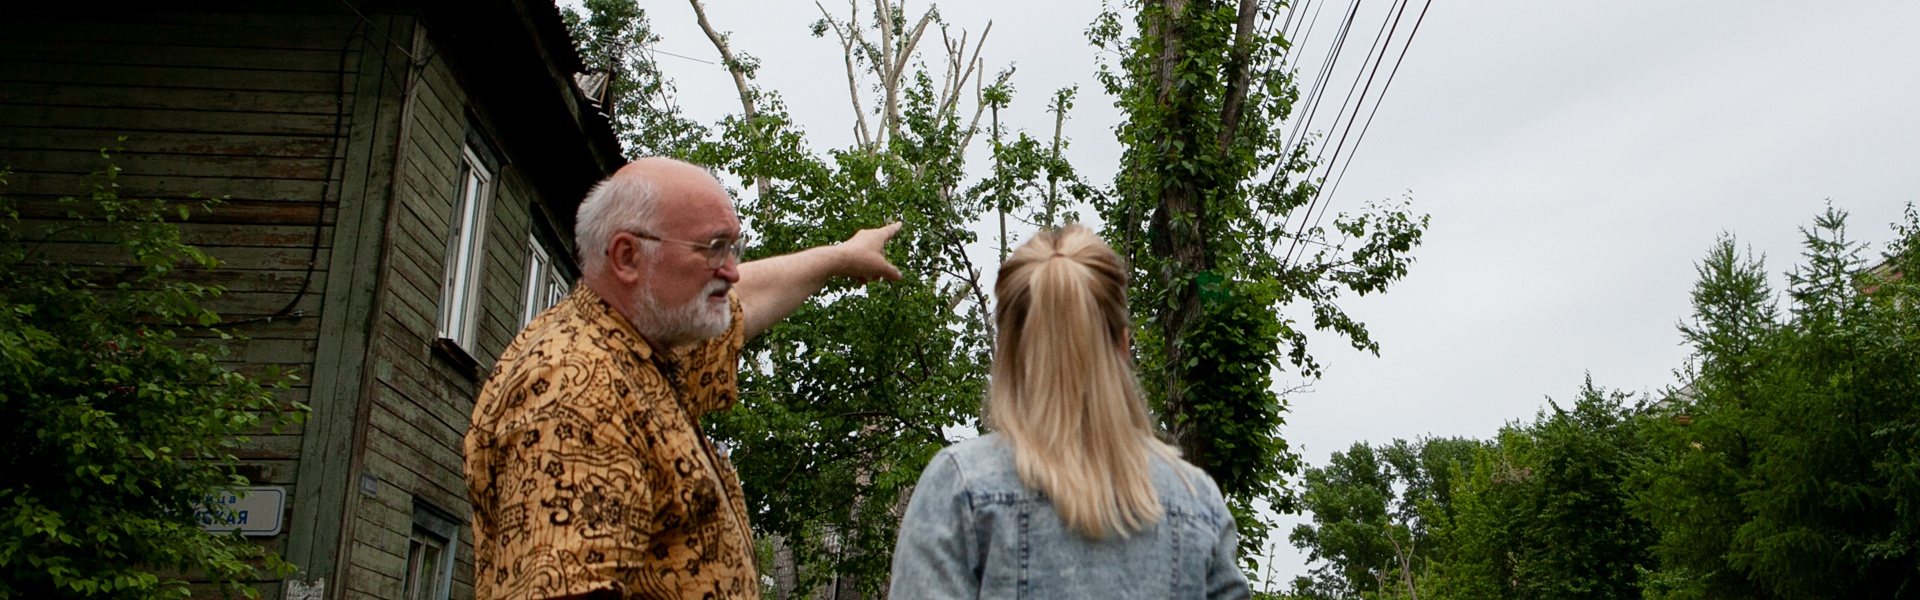 Почему в Иркутске вырубают деревья? Мнение жителей и экспертов